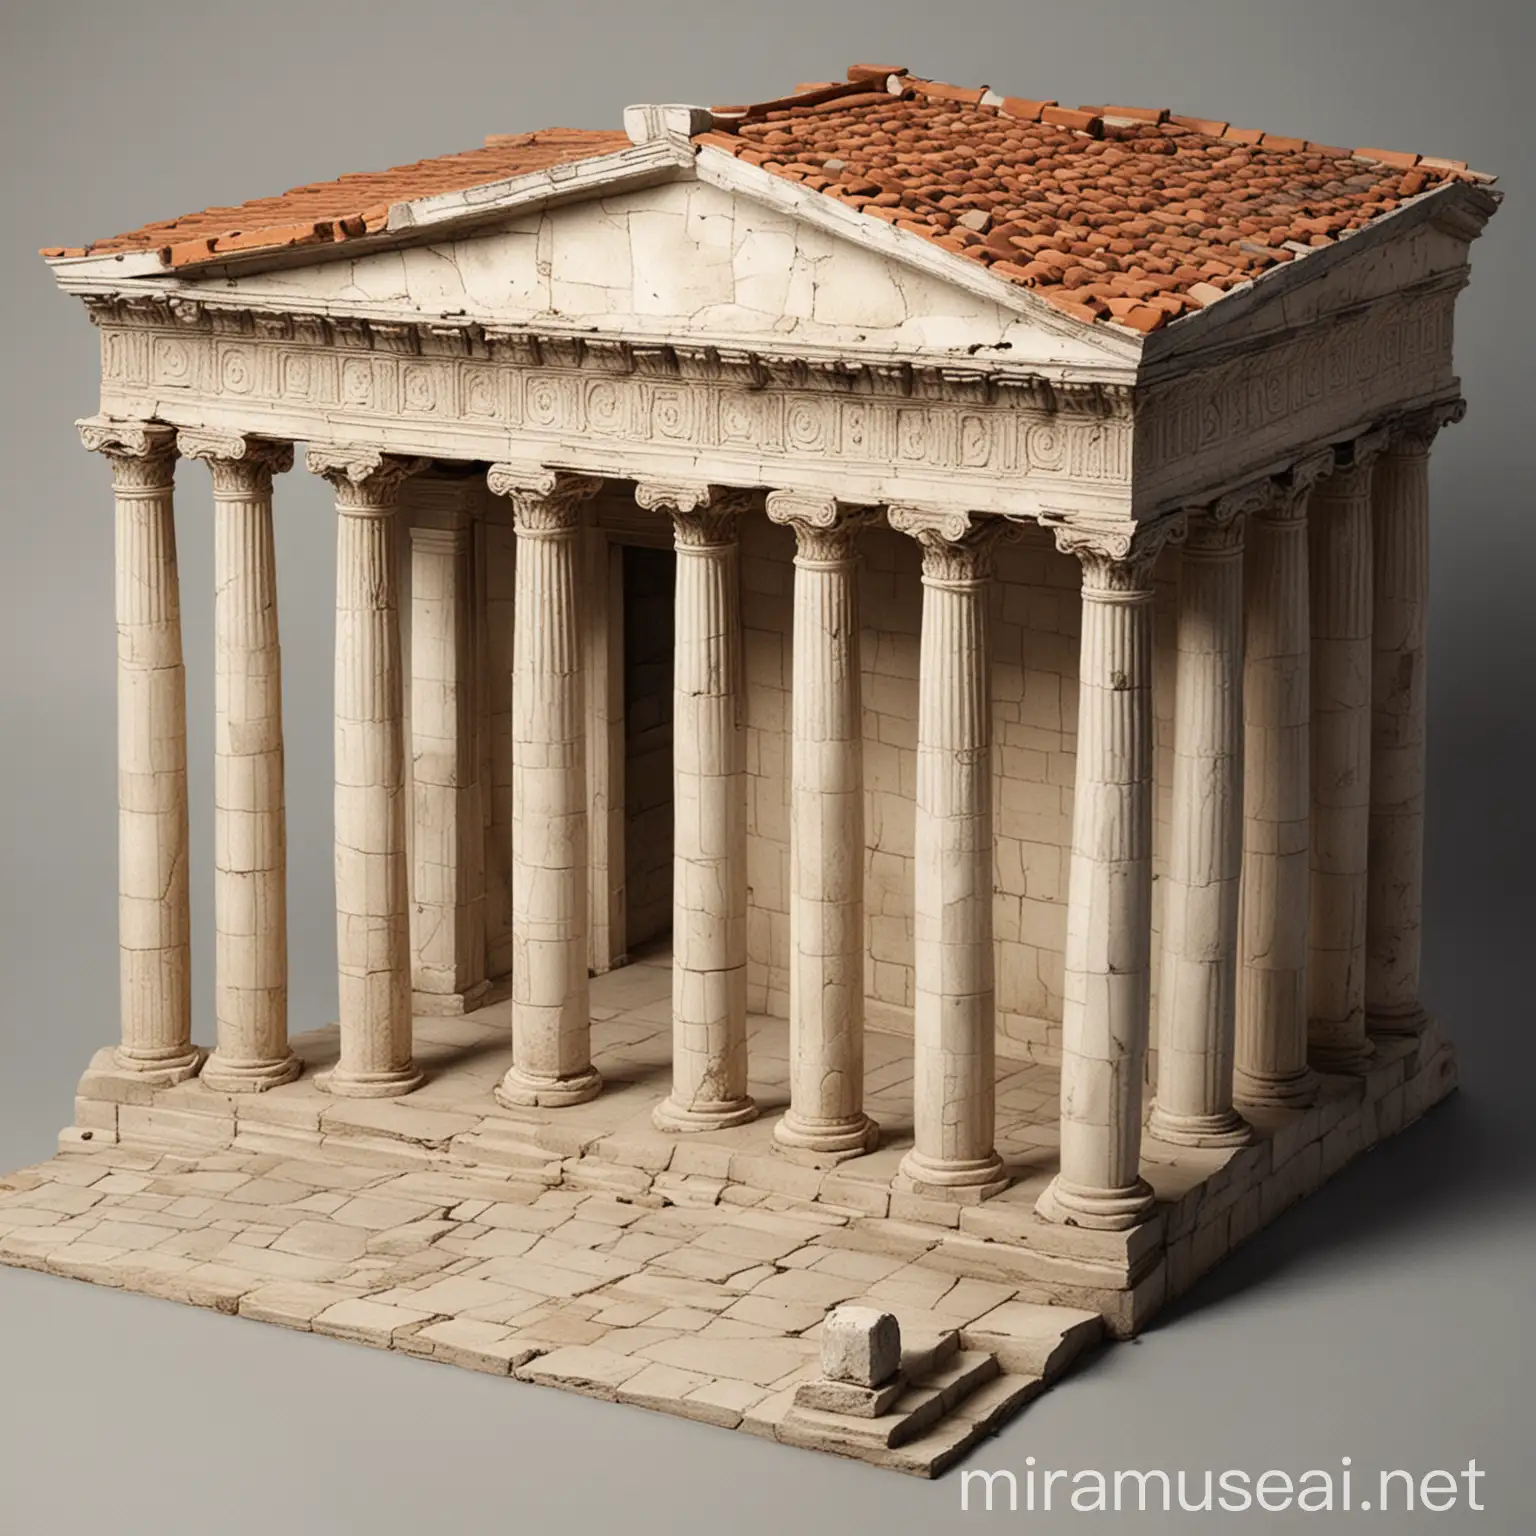 нарисуй мне длинное и широкое здание, с колонами вместо стен, с полом, где потом он подимыаеться на 1 ступеньку, с двухскатной крышей, в древнегреческом стиле